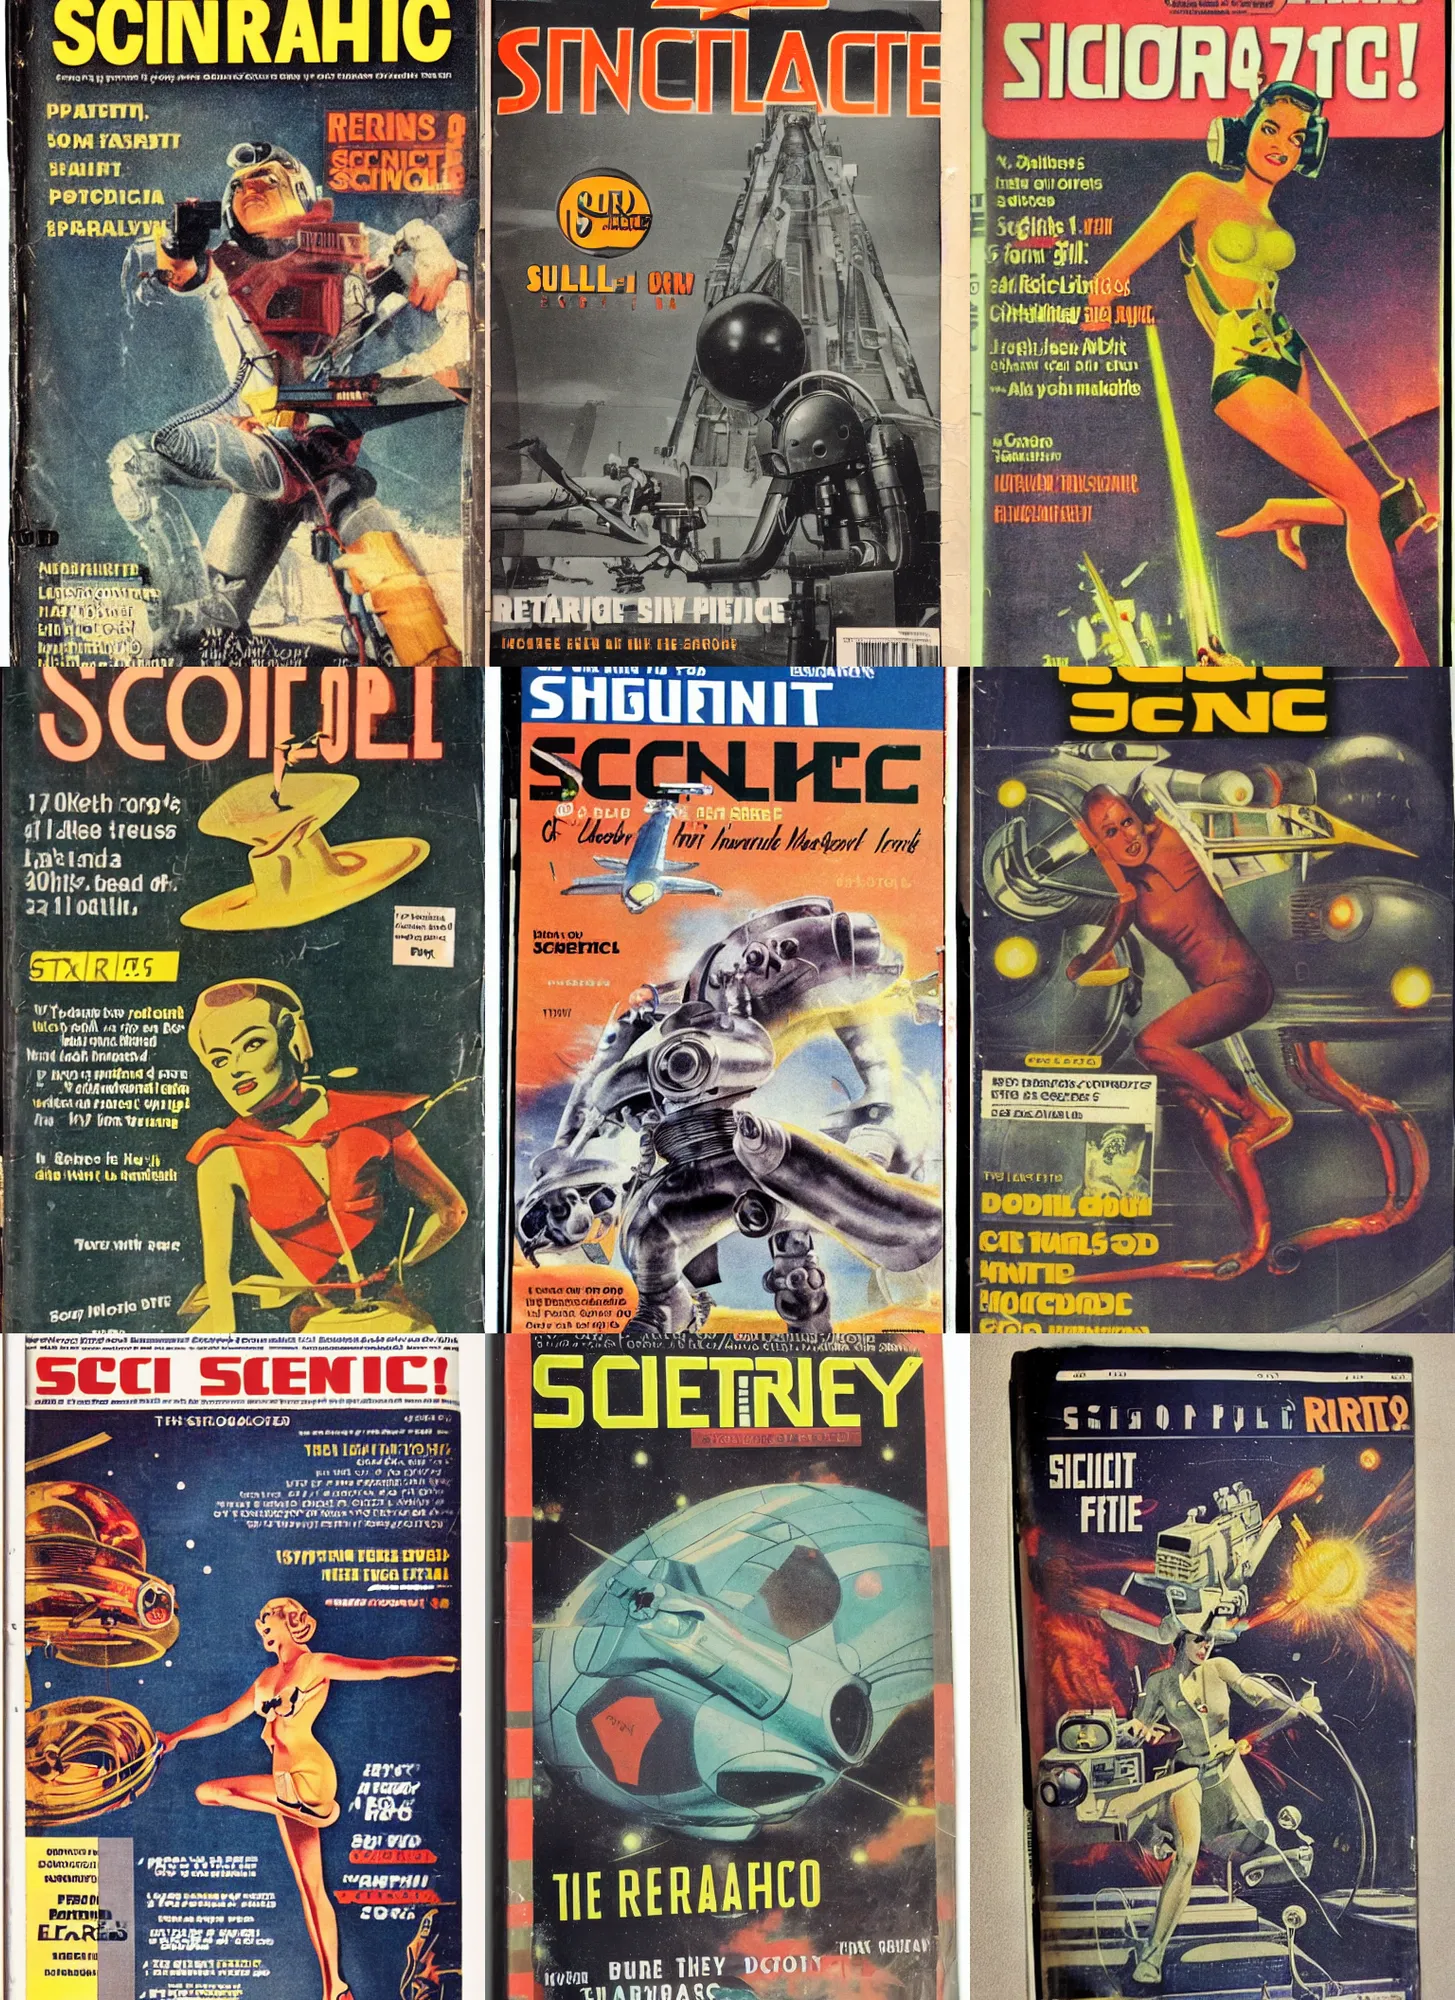 Prompt: photograph of a retro sci - fi magazine